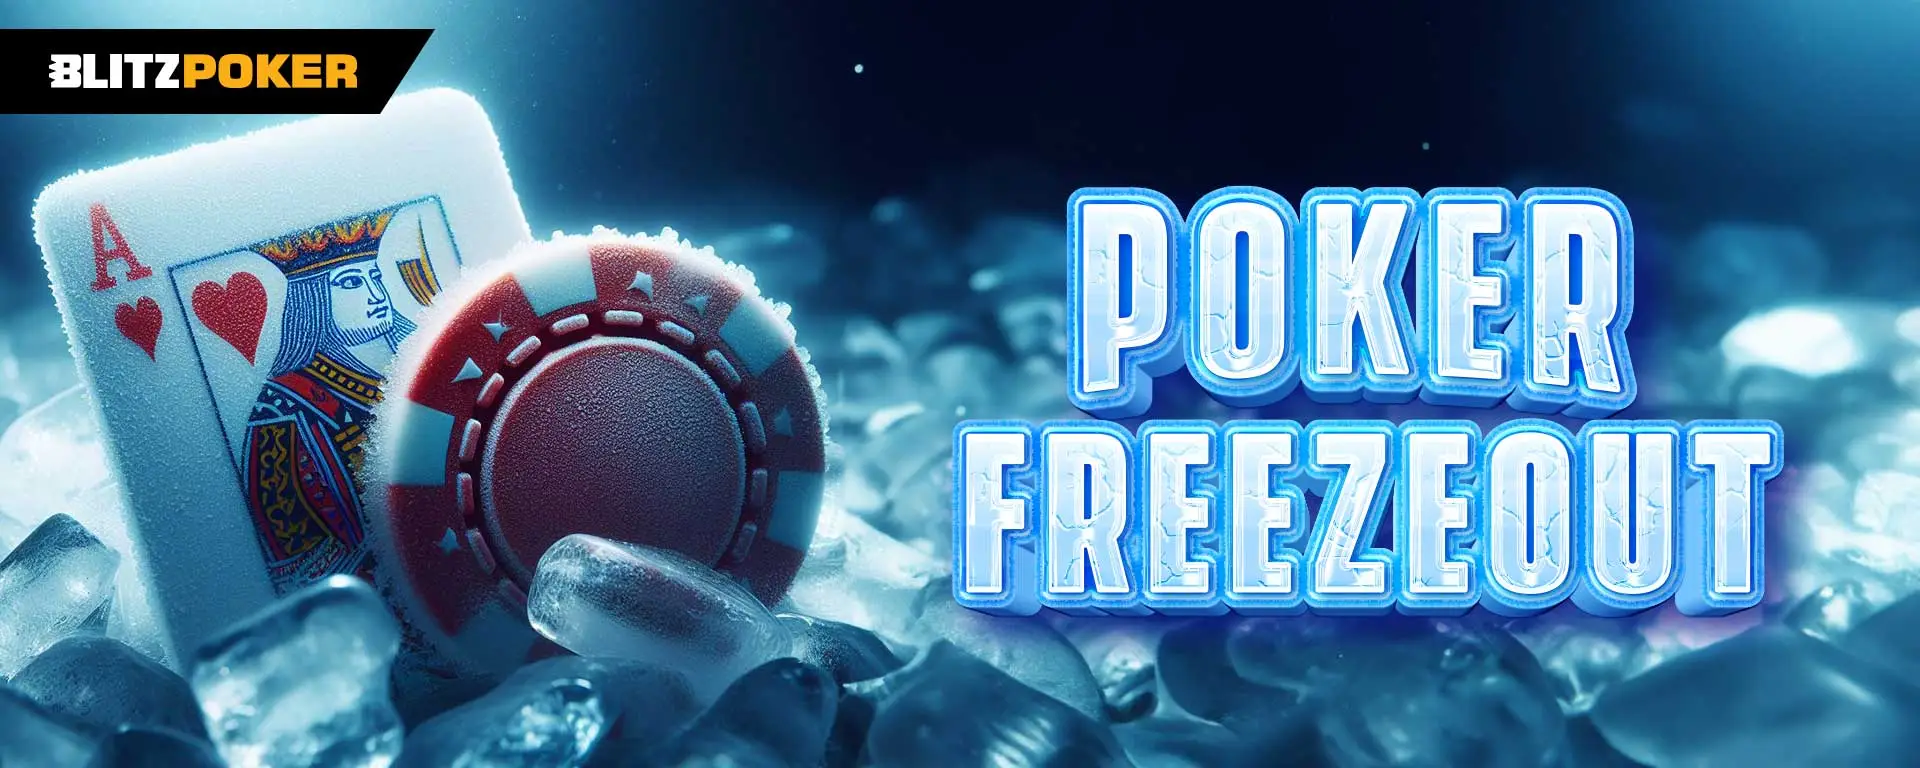 Freezeout in Poker